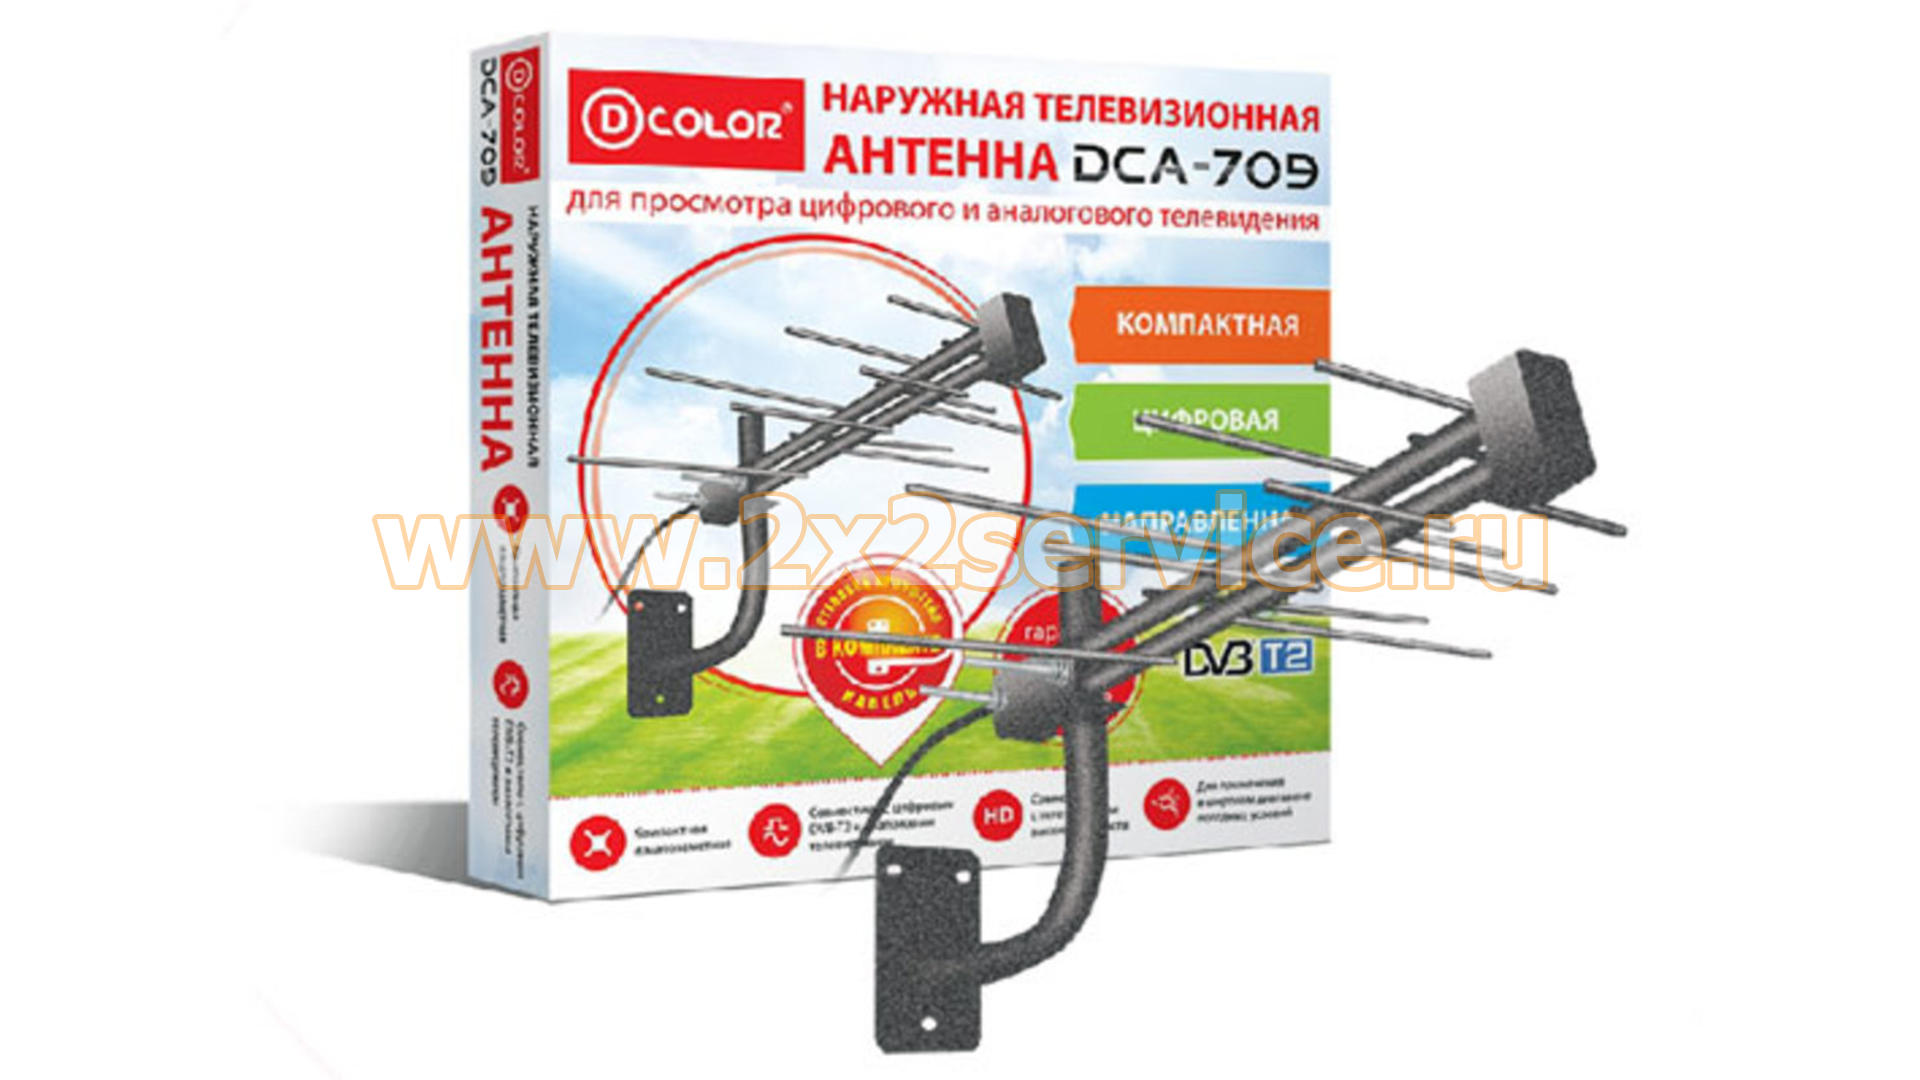 Антенна D-Color DCA-709 (наружная, активная)